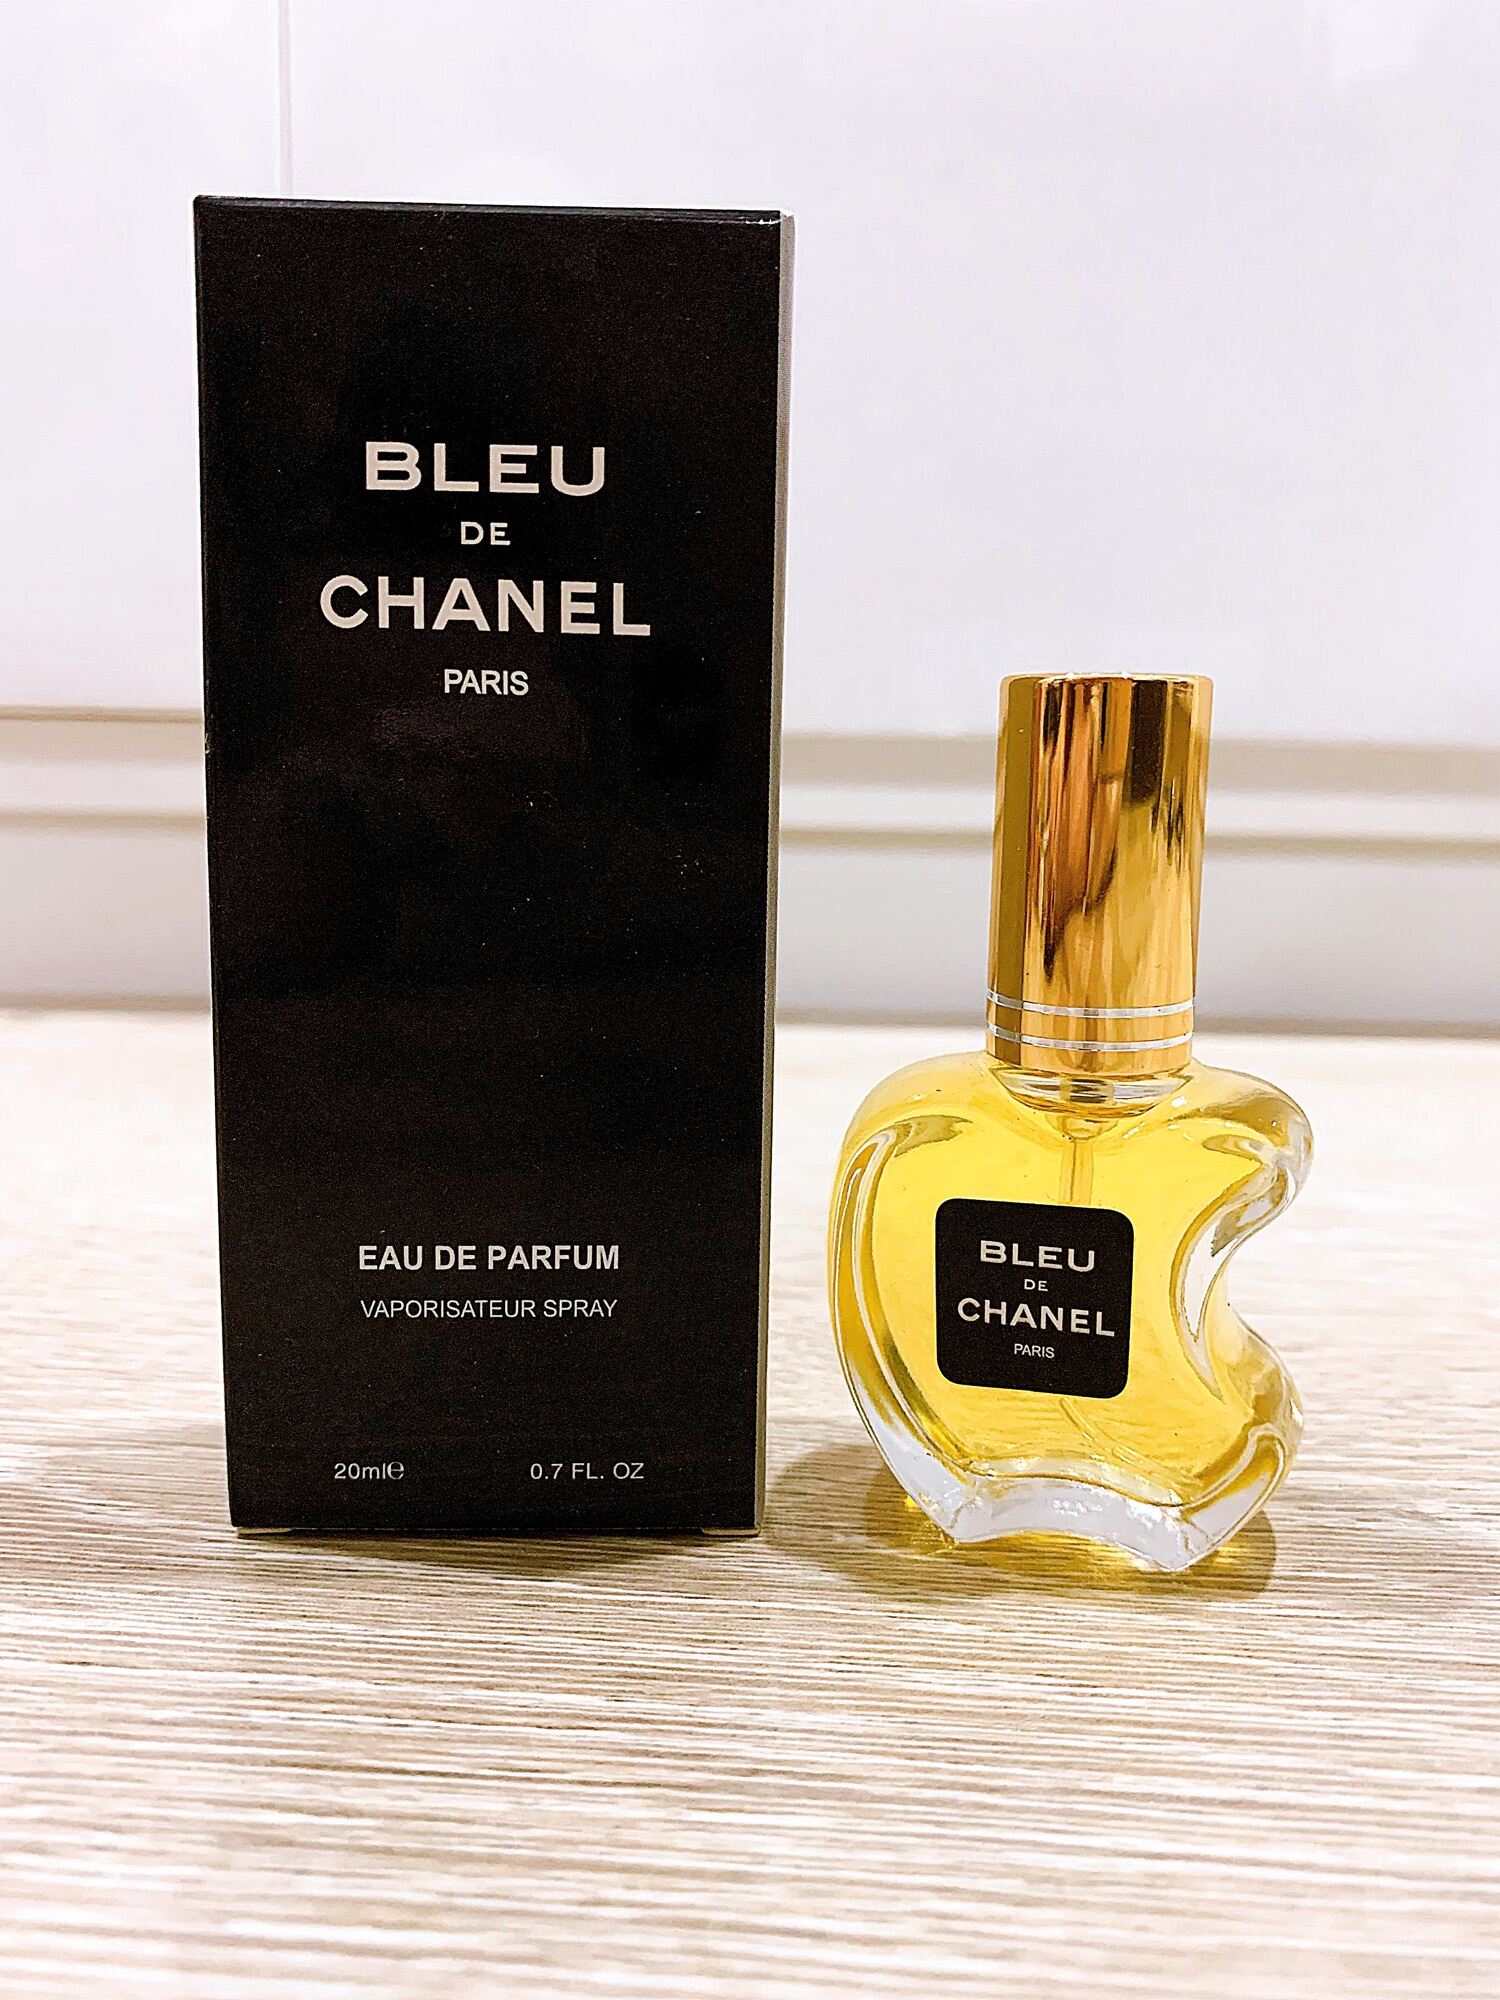 Perfum nước hoa mini CHANEL PARIS eau de parfum  5ml GABRIELLE của Pháp   Home Shop  Mỹ phẩm cao cấp nhập khẩu